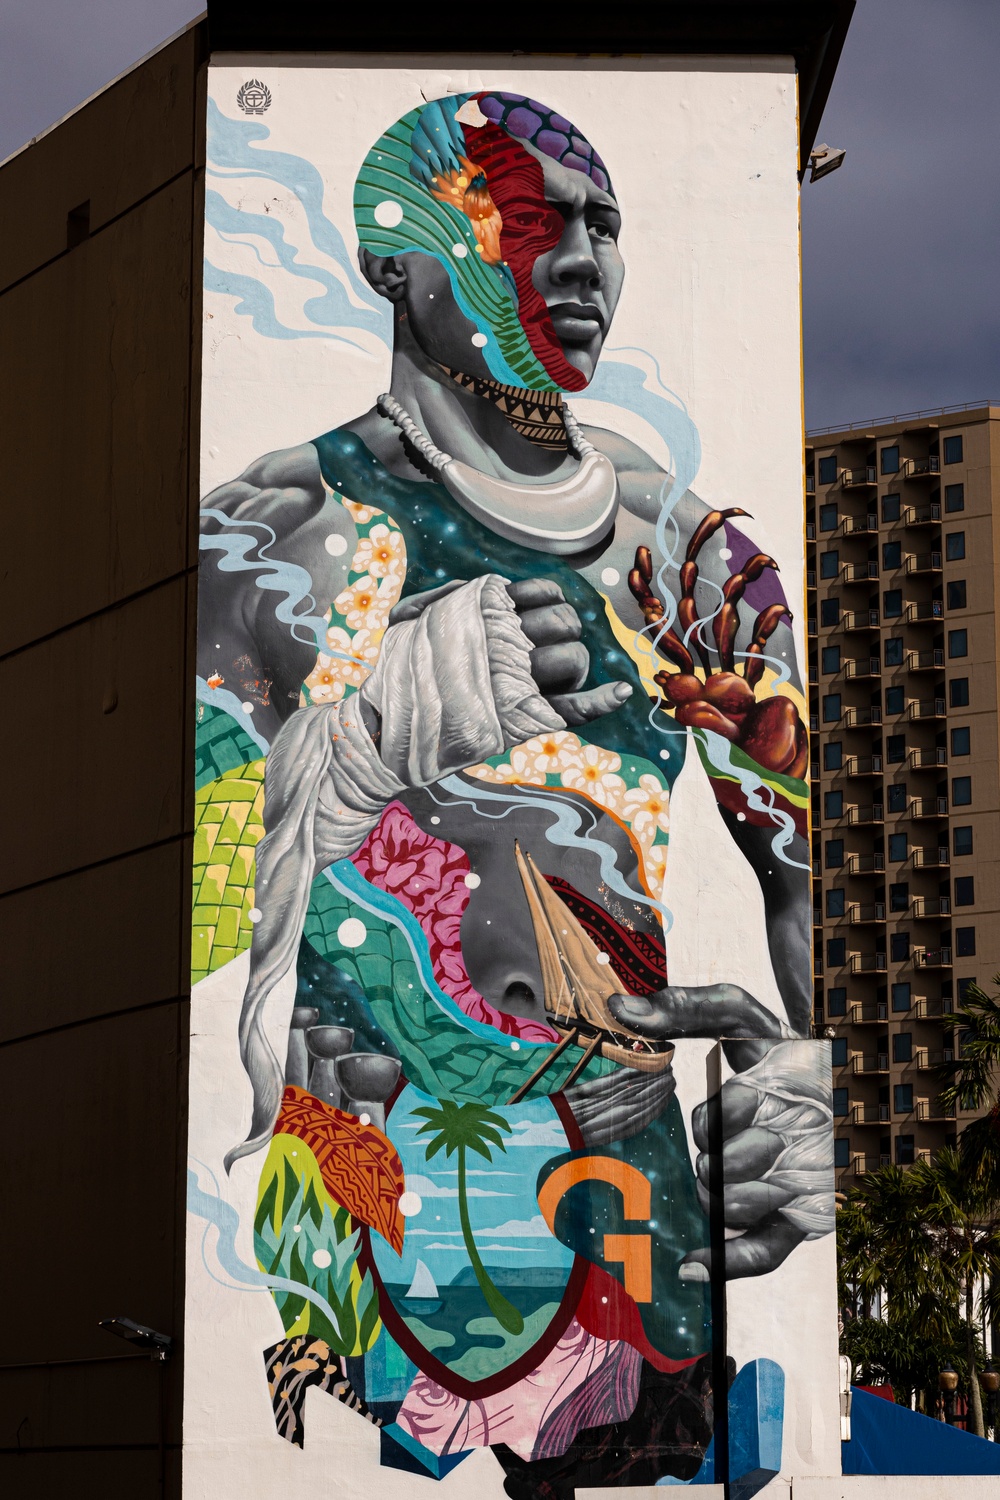 Murals in Guam express the island’s artistic culture